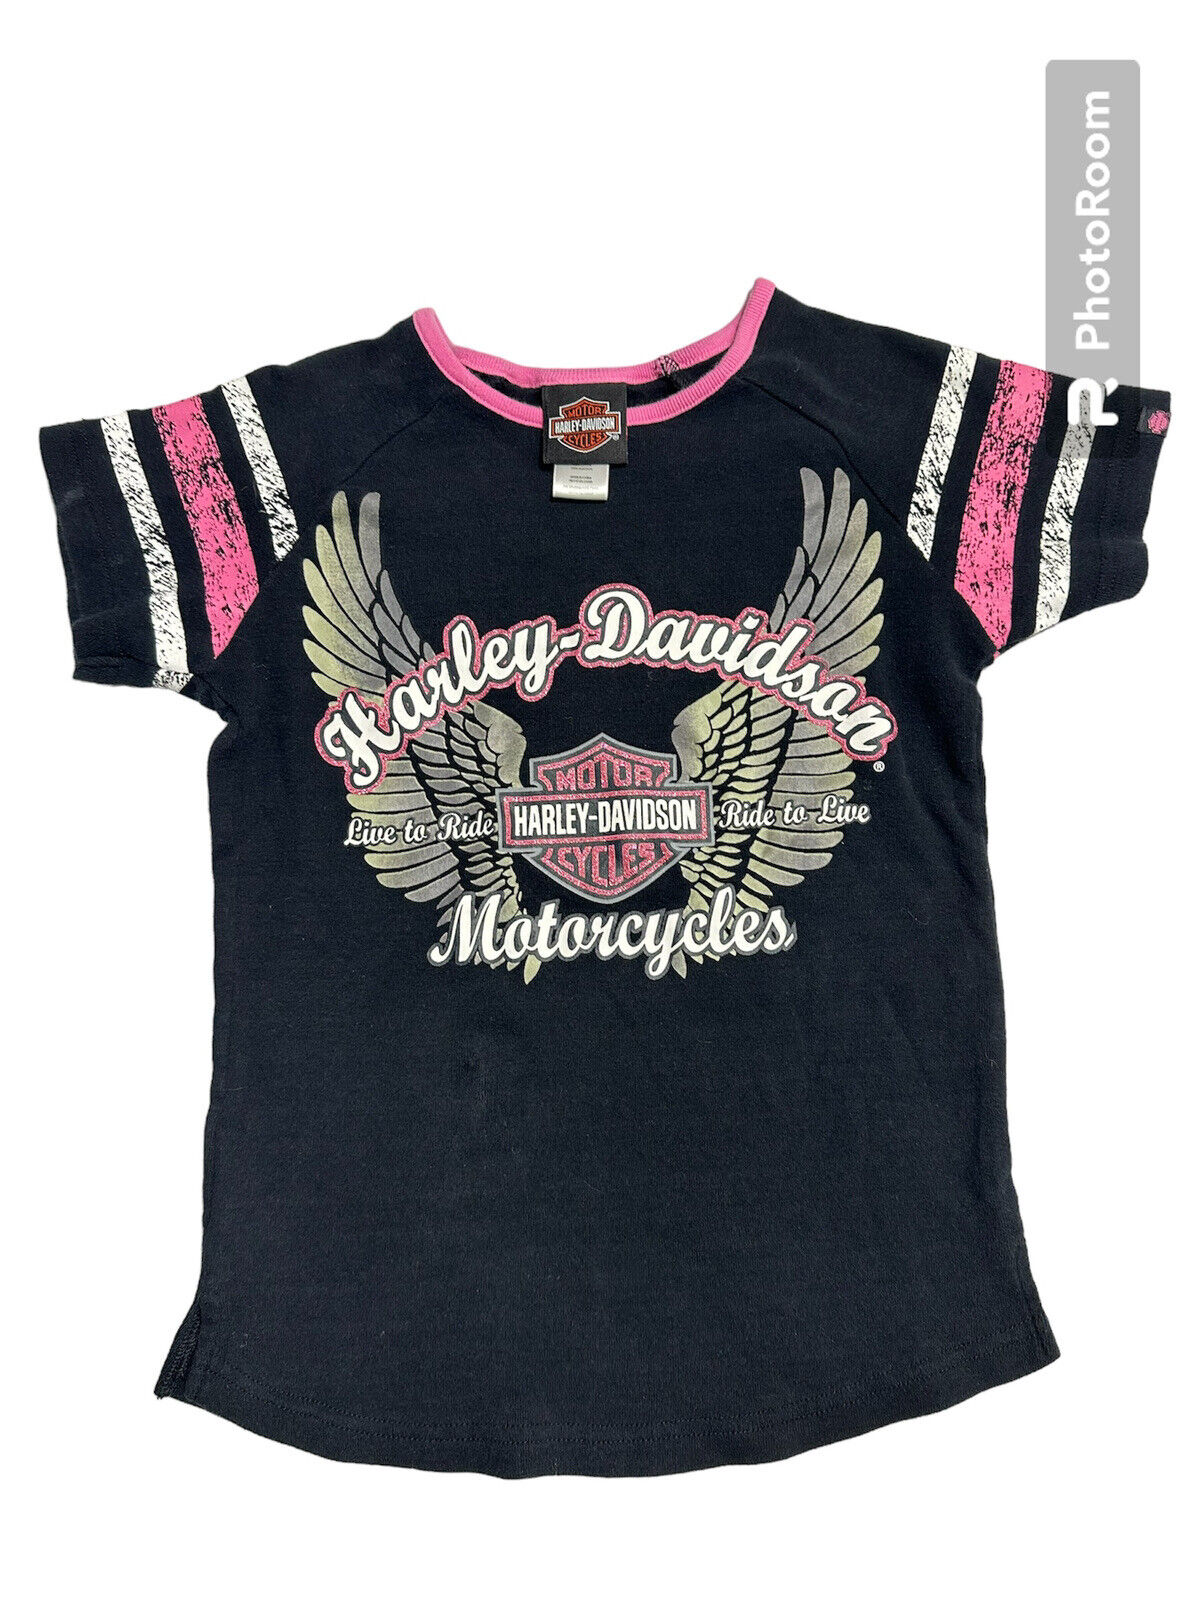 Harley Davison Tshirt Girls Size 7/8 Black Pink Short Sleeve Motorcycles Glitter